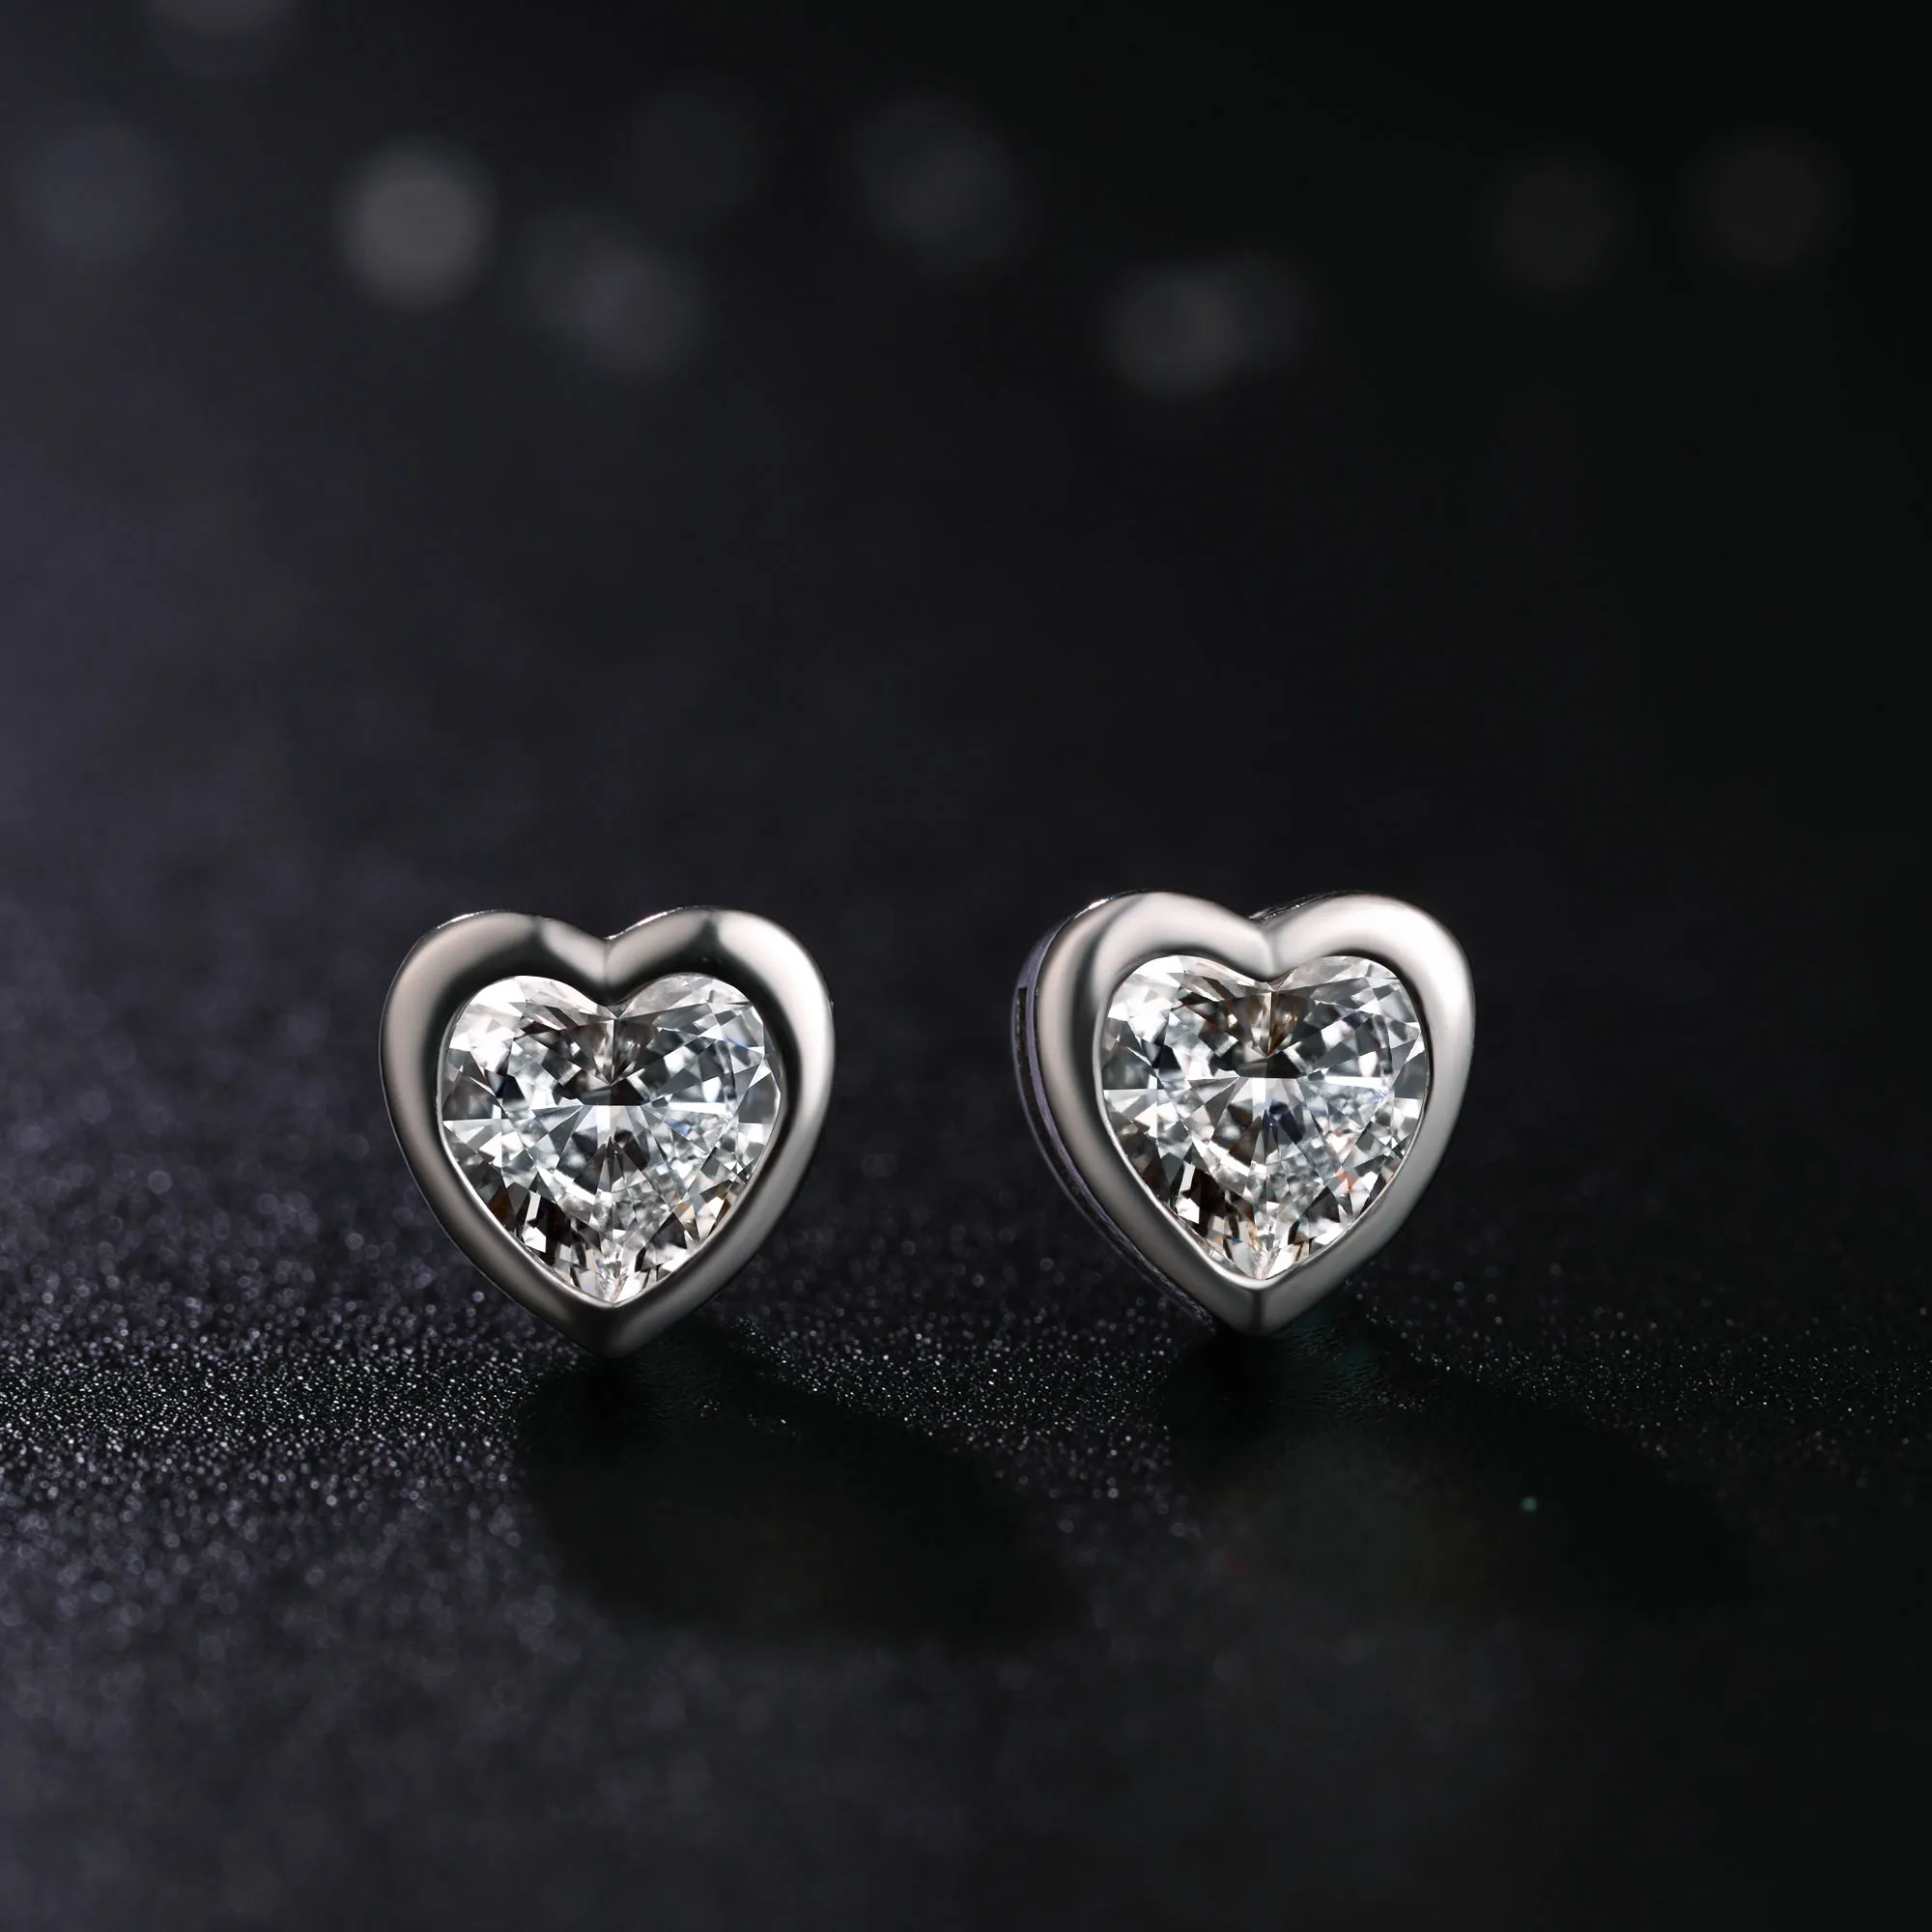 925 Sterling Silver Fashion Korean Cute Style Clear Hoop Cubic Zirconia Heart-Shaped Edge Big Heart Shape Stud Earrings For Women Gift